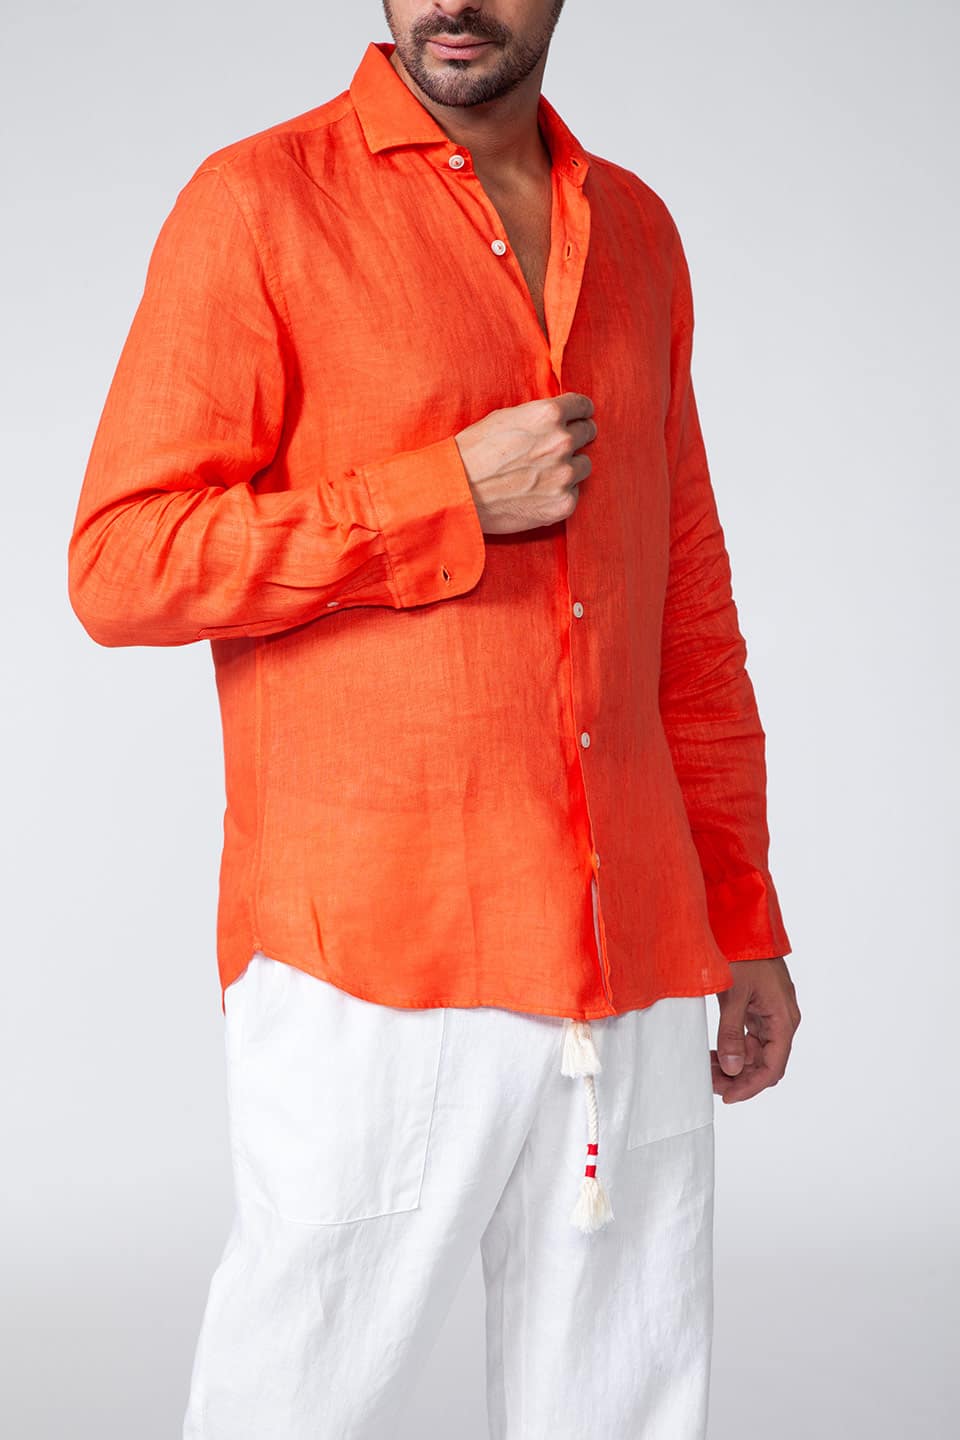 MC saint barth male pamplona shirt orange button